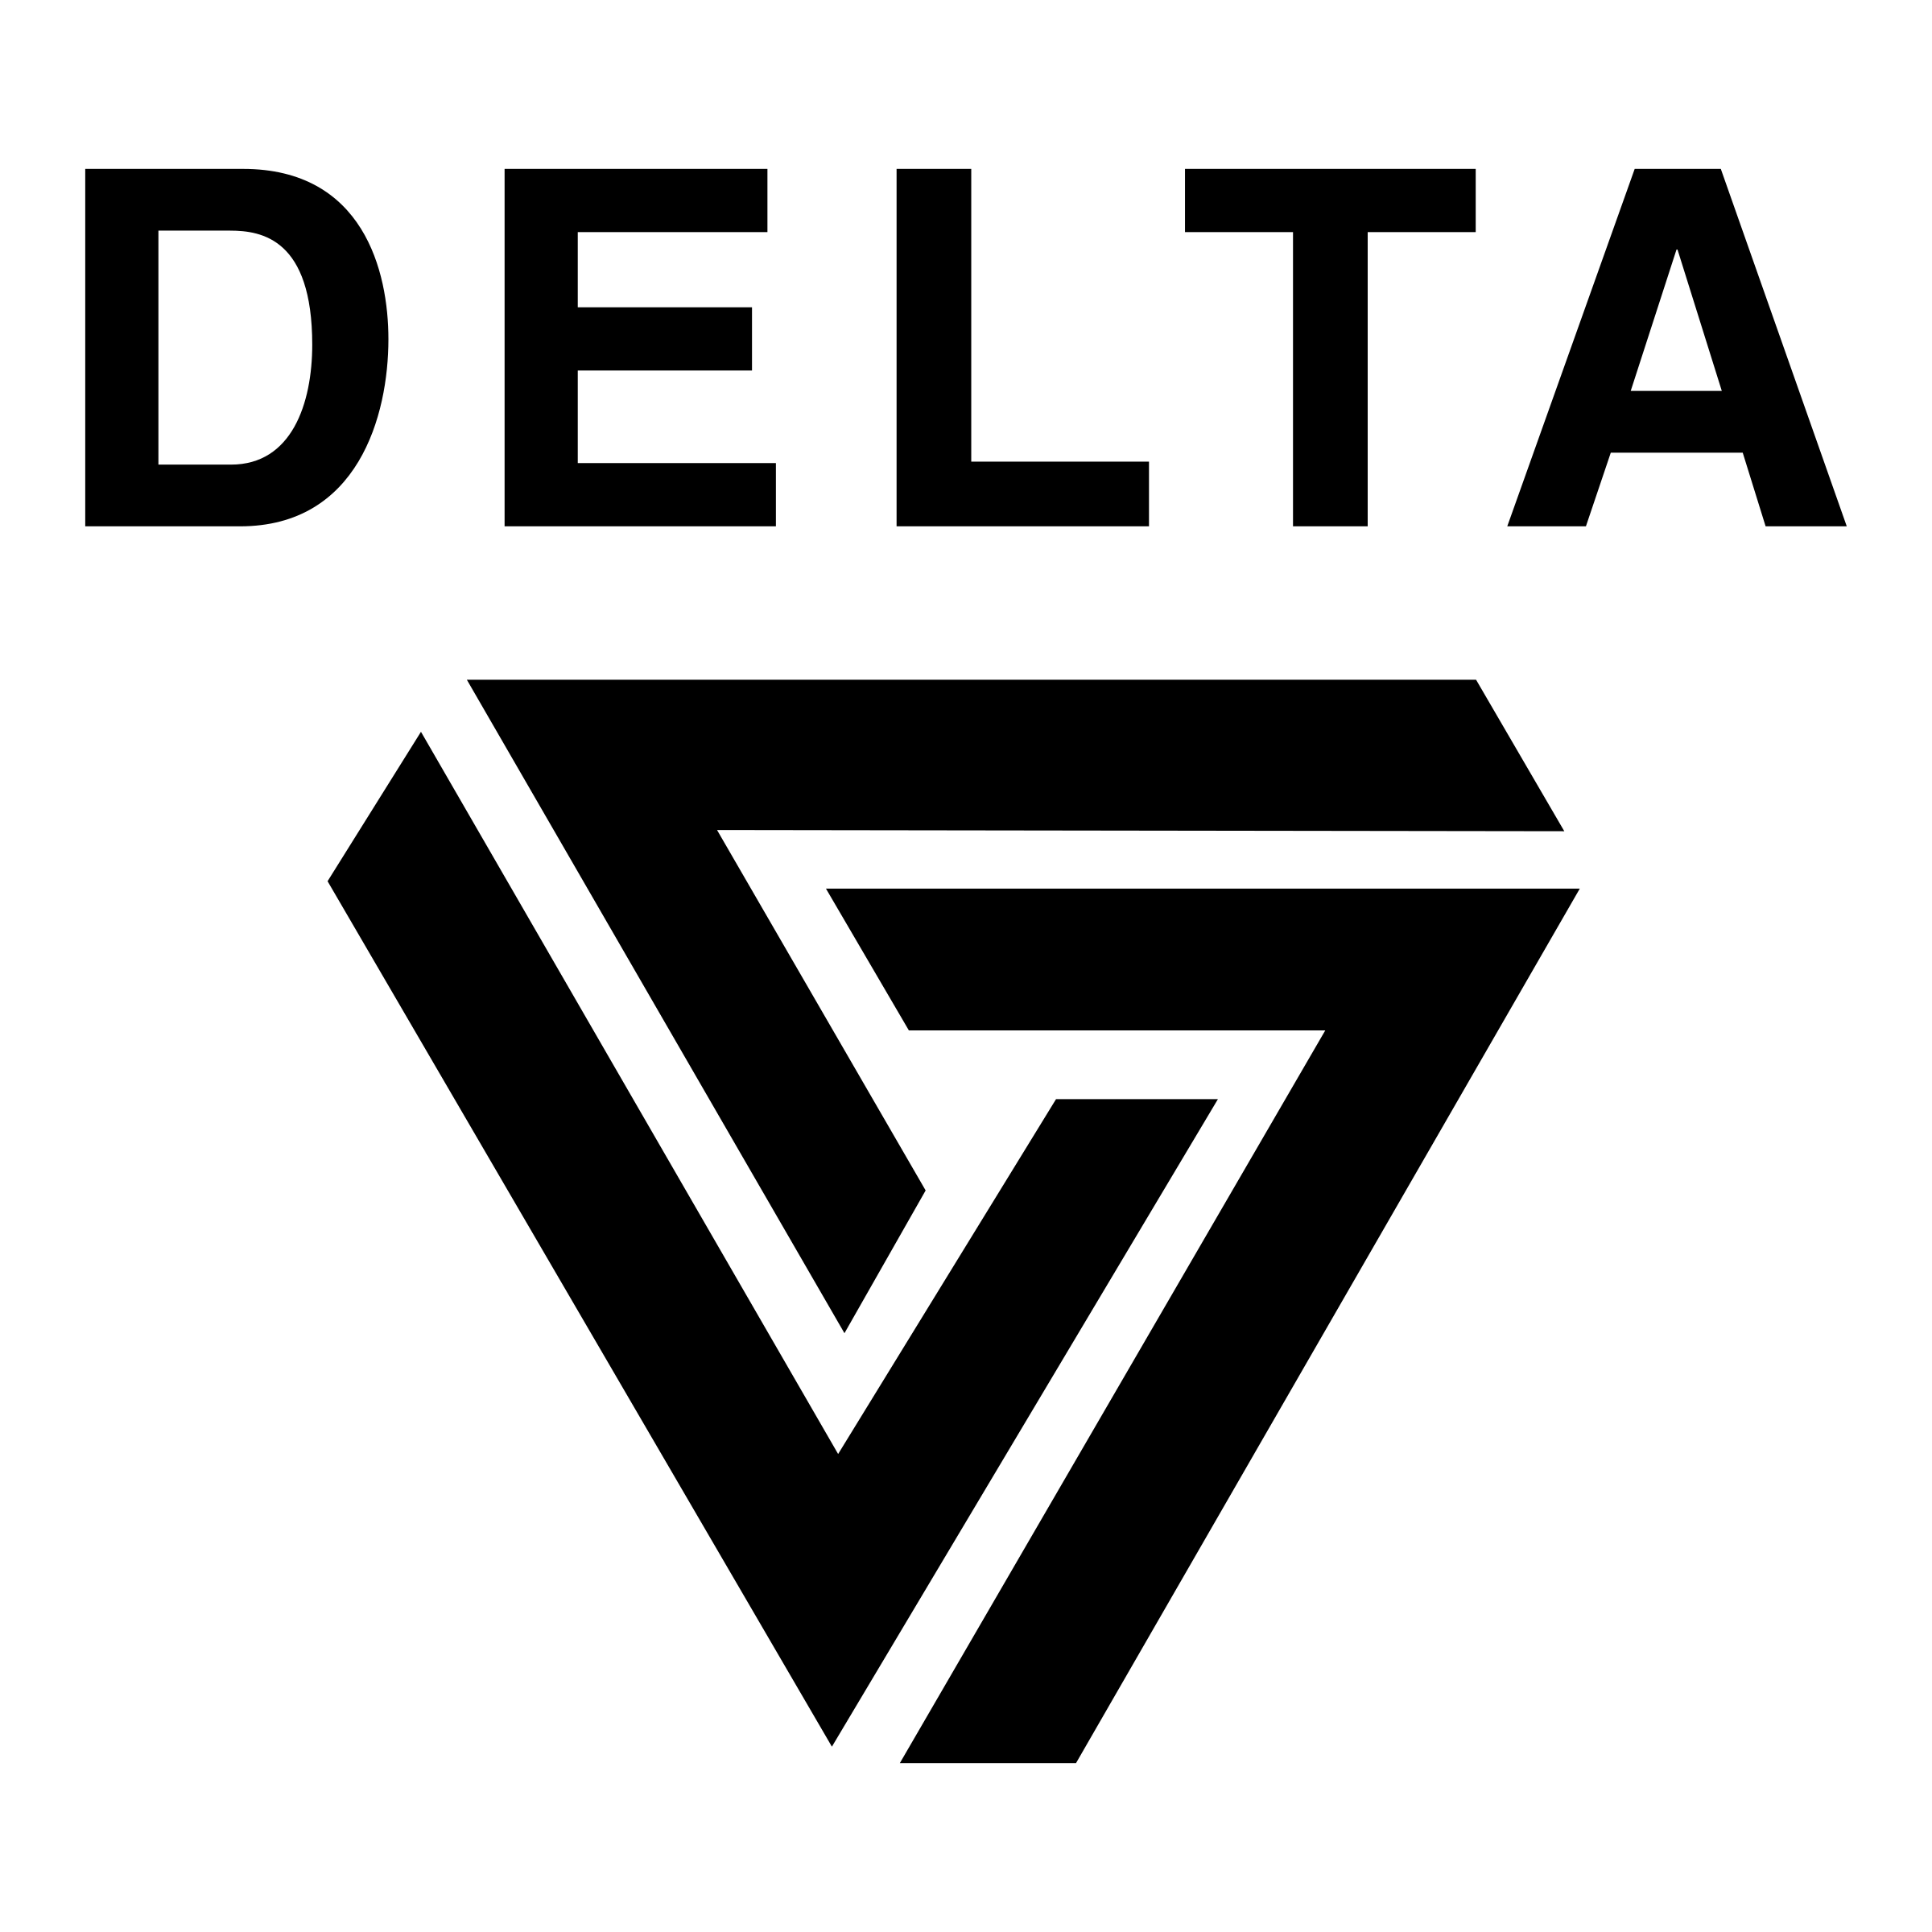 Delta Logo PNG Images Transparent Free Download | PNGMart